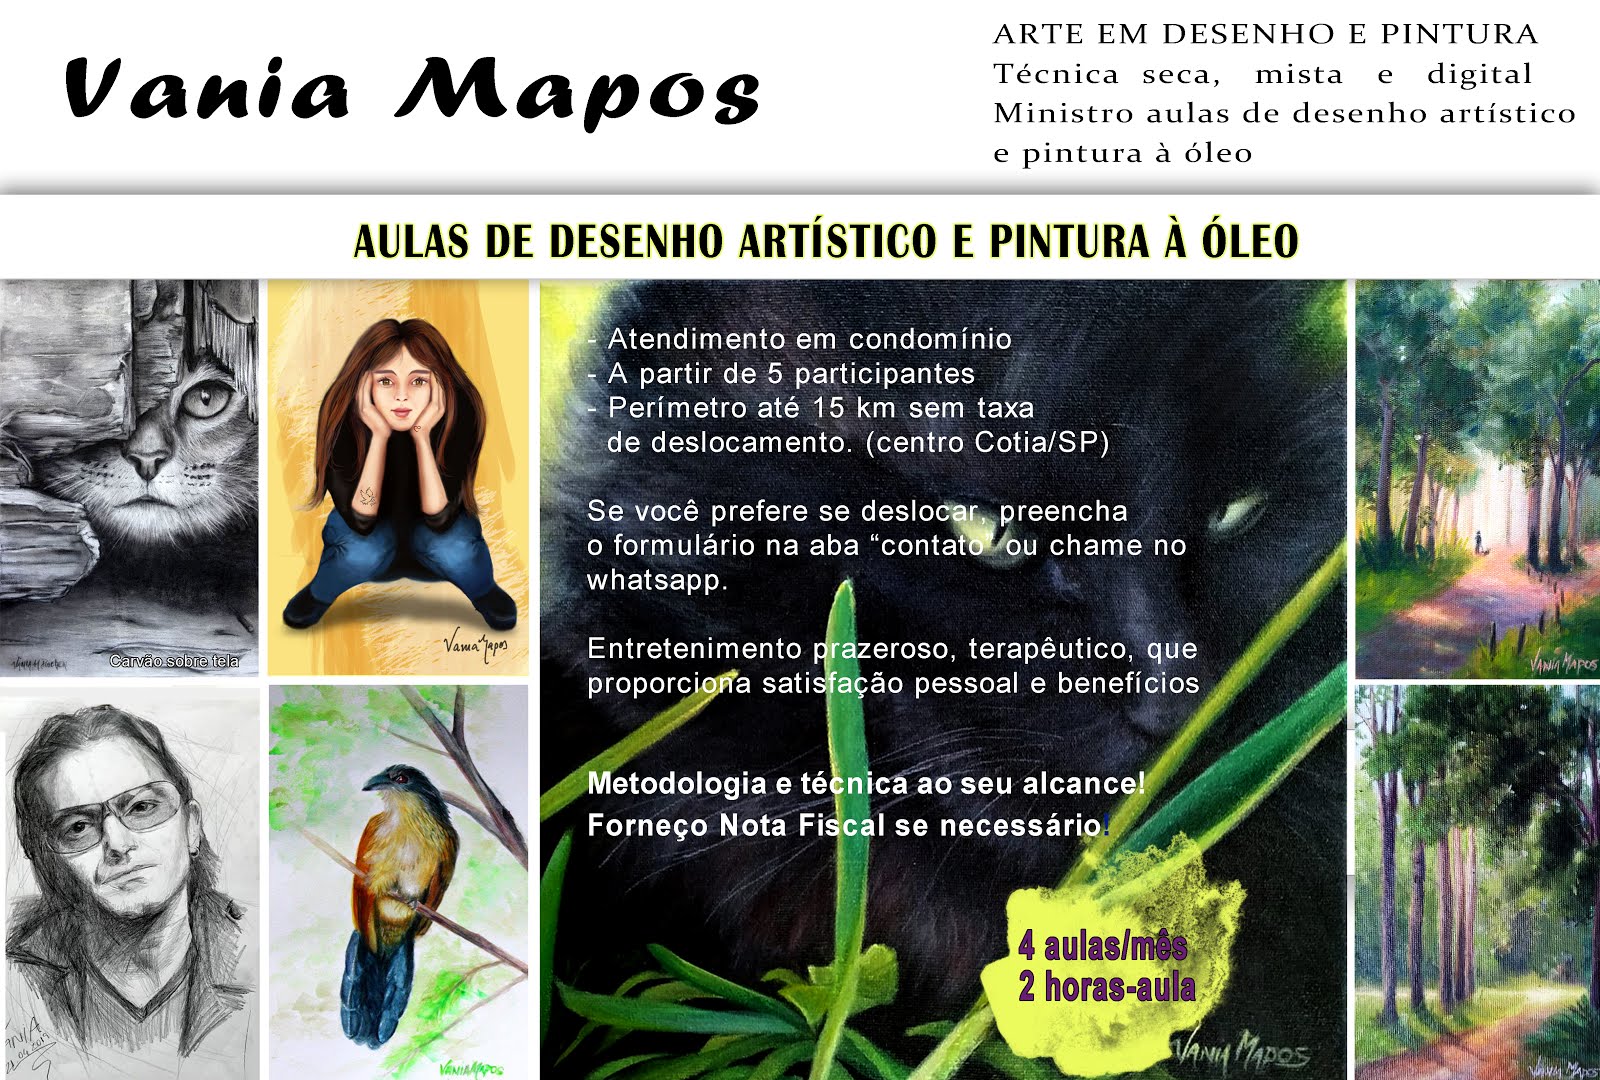 Vania Mapos 